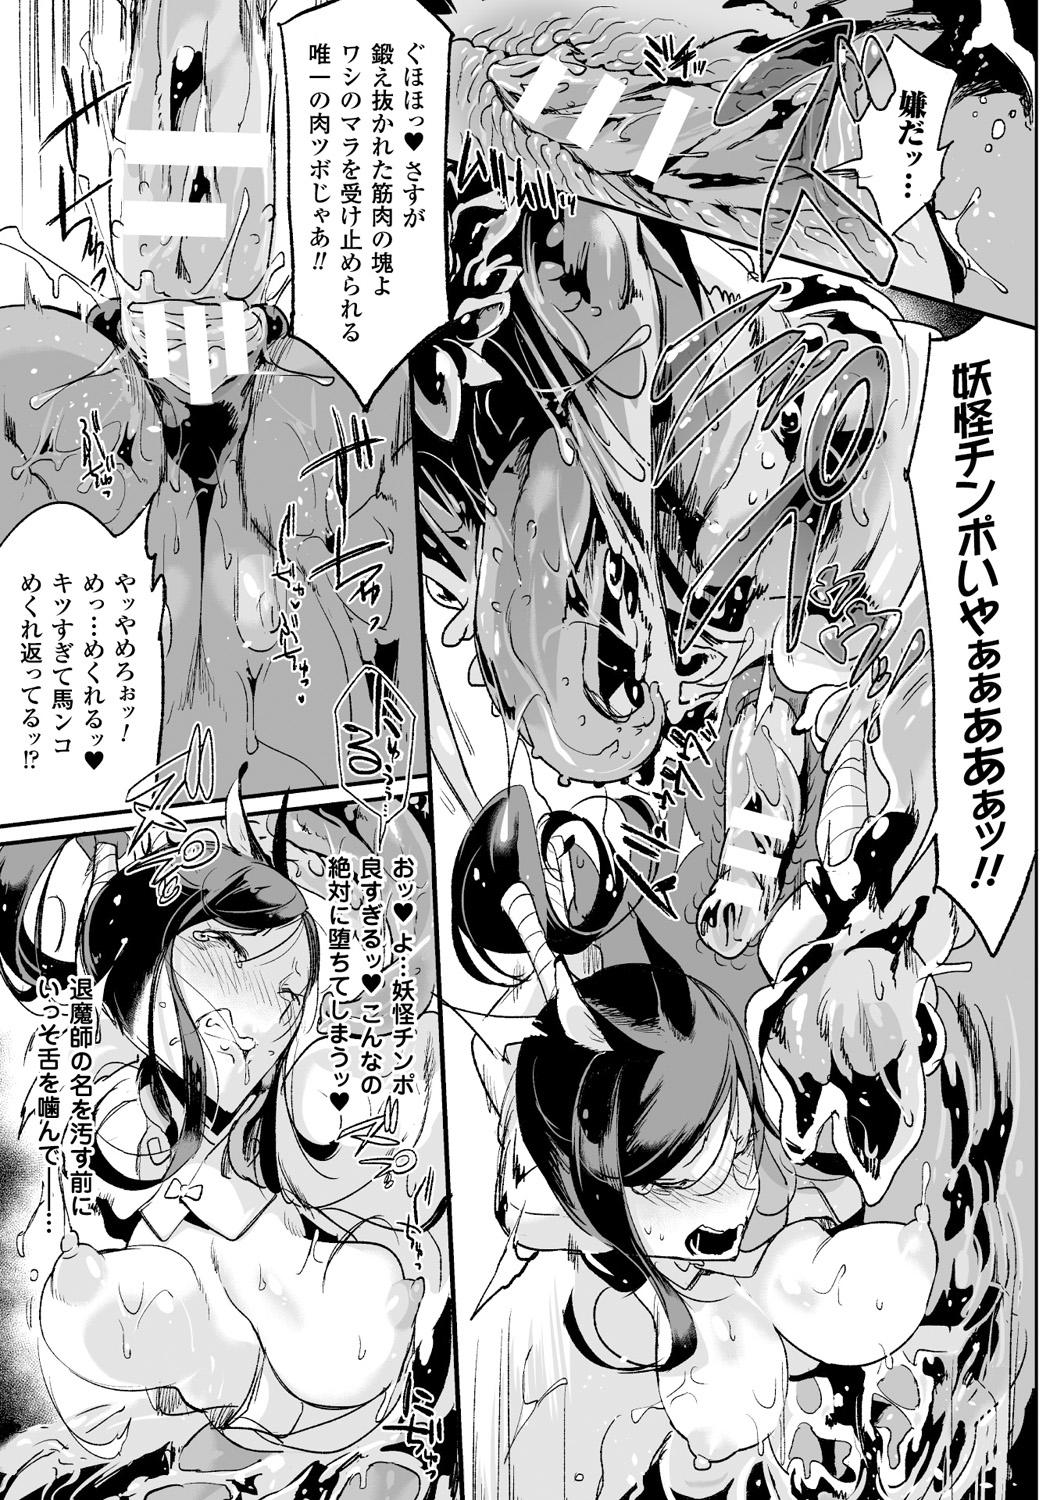 Bessatsu Comic Unreal Monster Musume Paradise Digital Ban Vol. 8 48